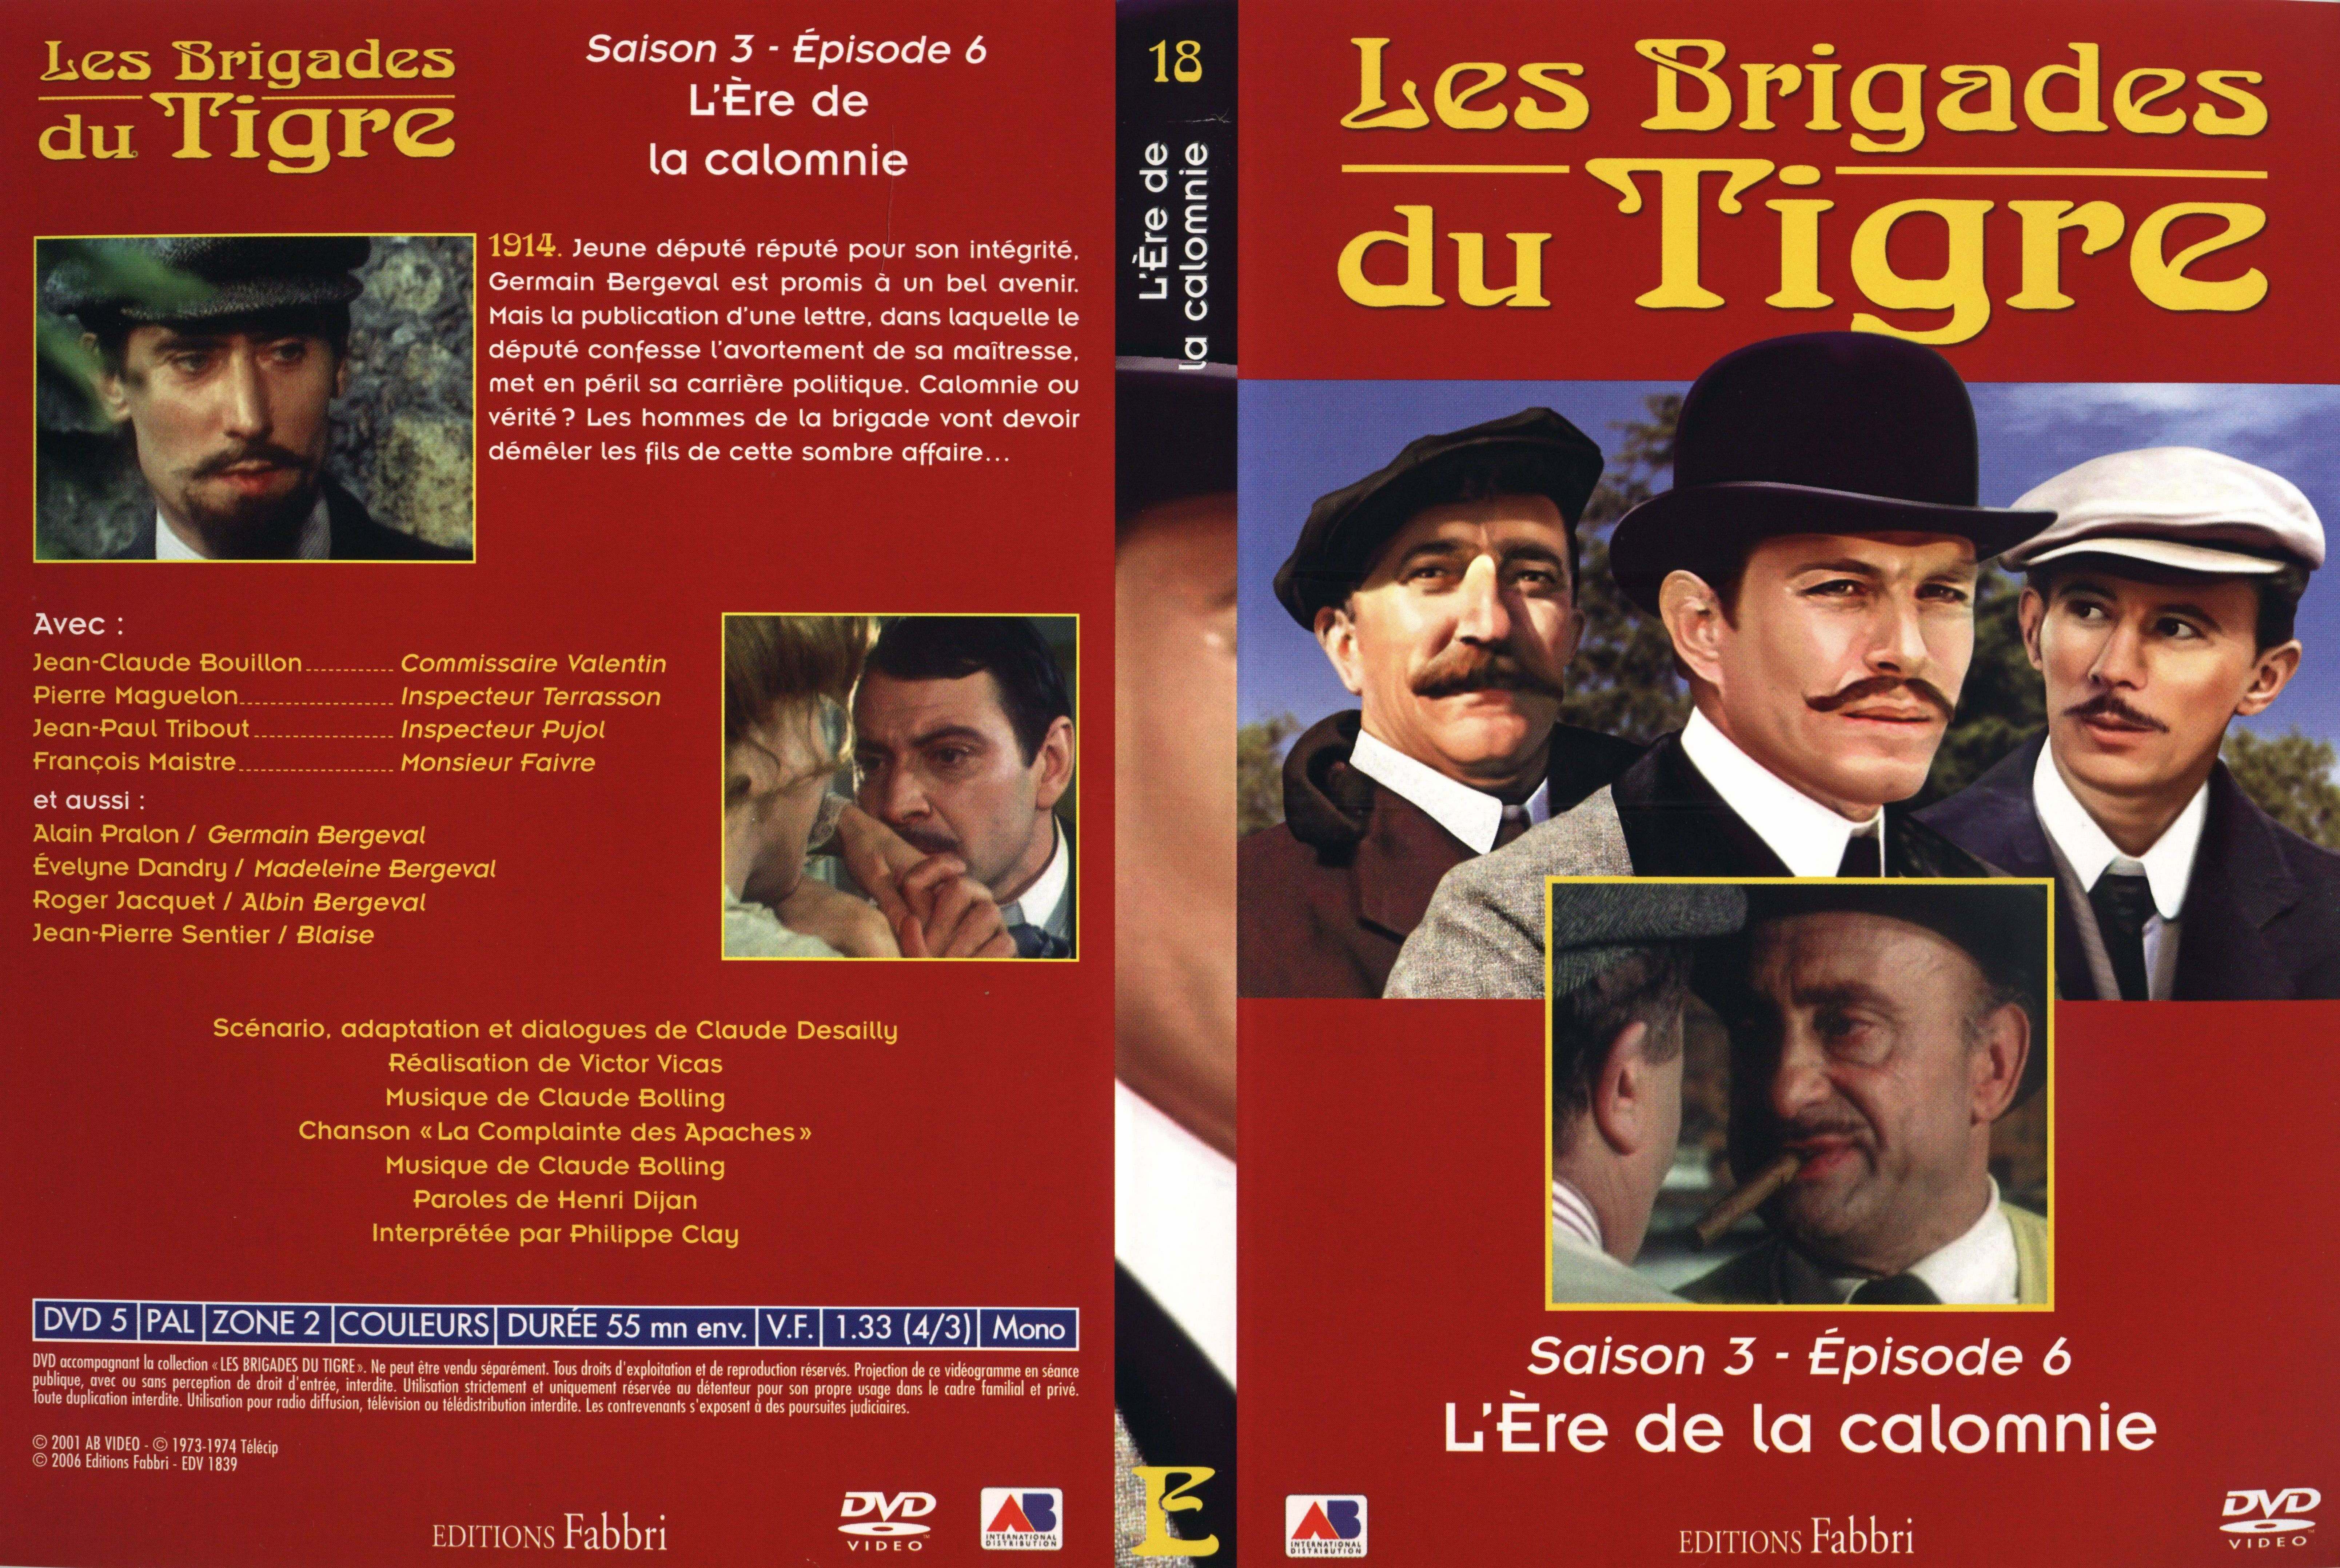 Jaquette DVD Les brigades du tigre saison 3 pisode 6